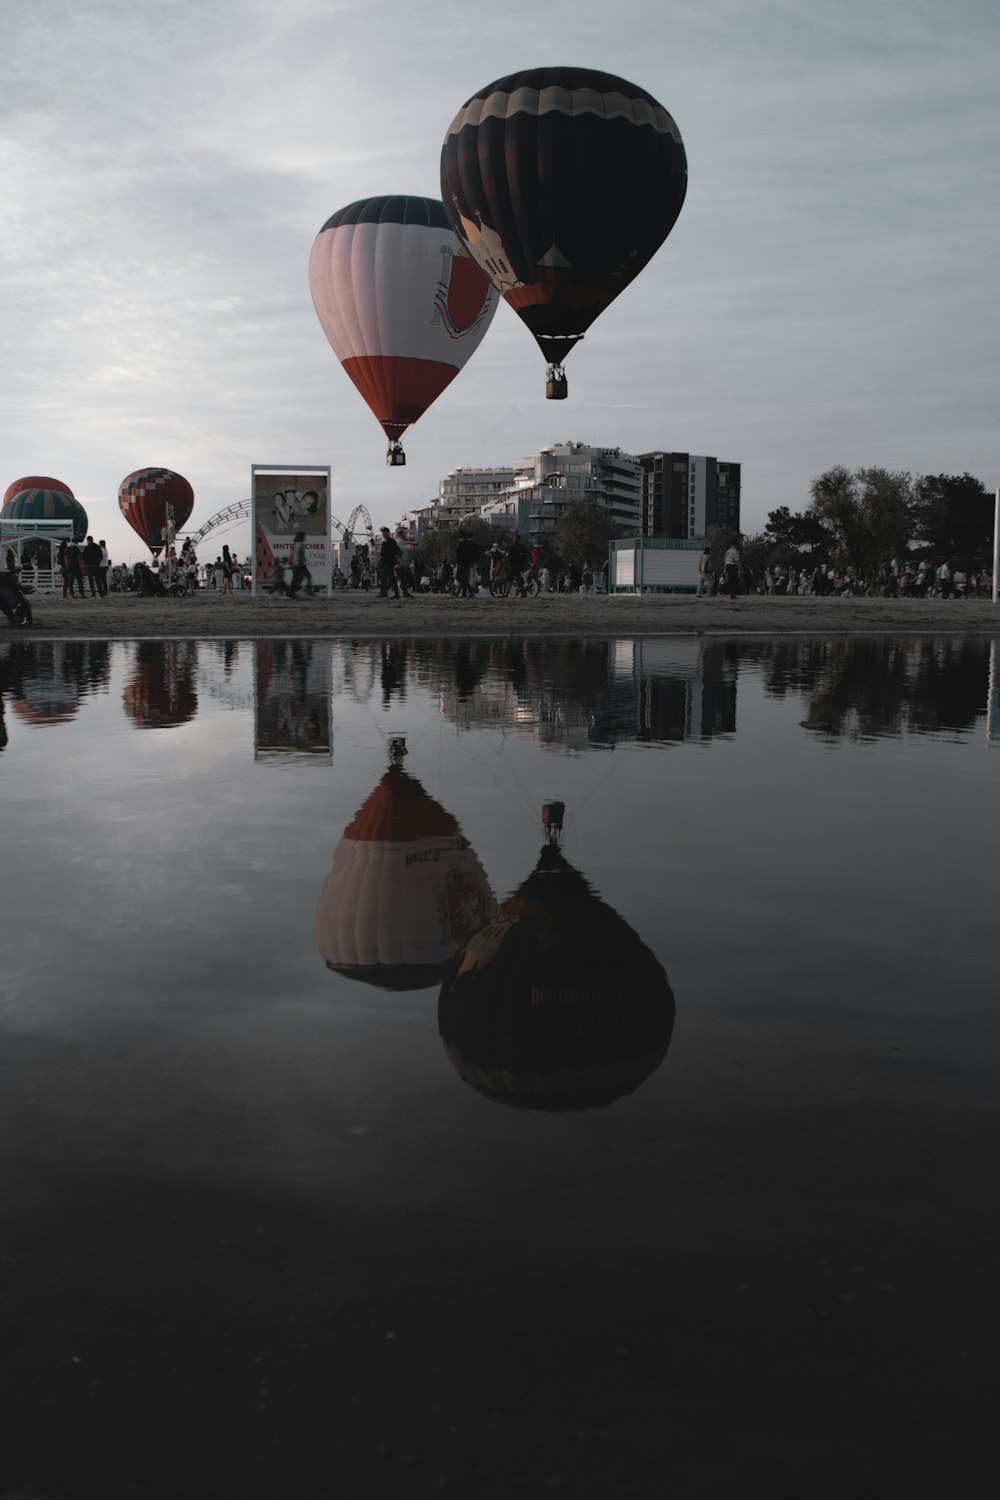 Un grupo de globos aerostáticos volando sobre un lago